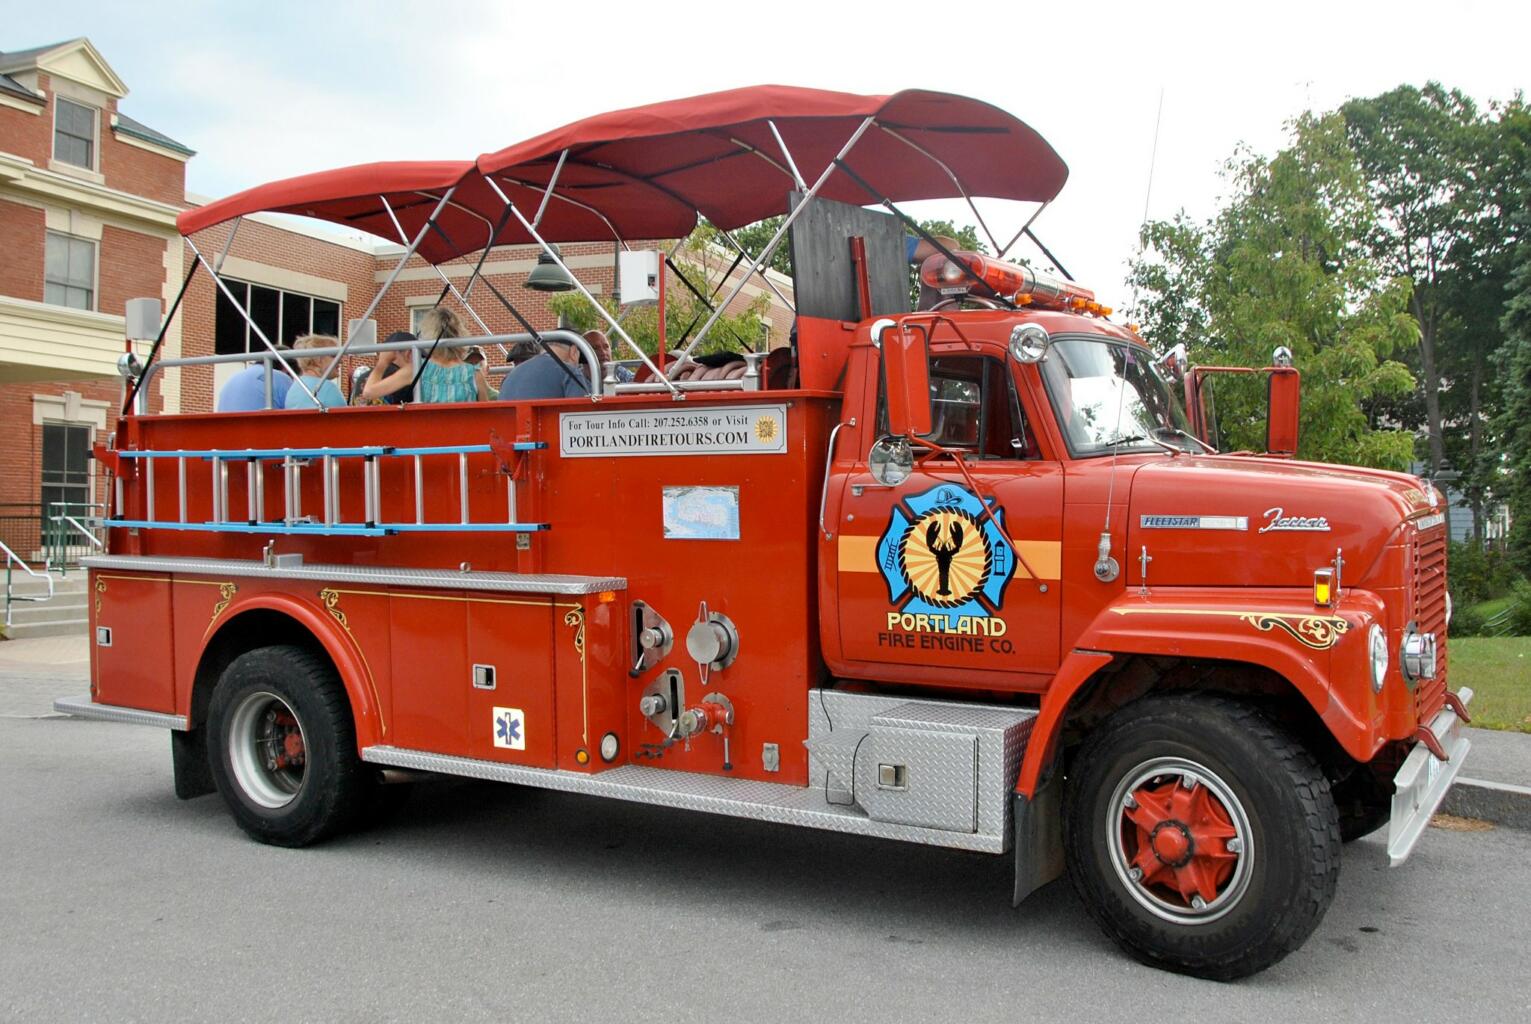 Portland Fire Engine Co.